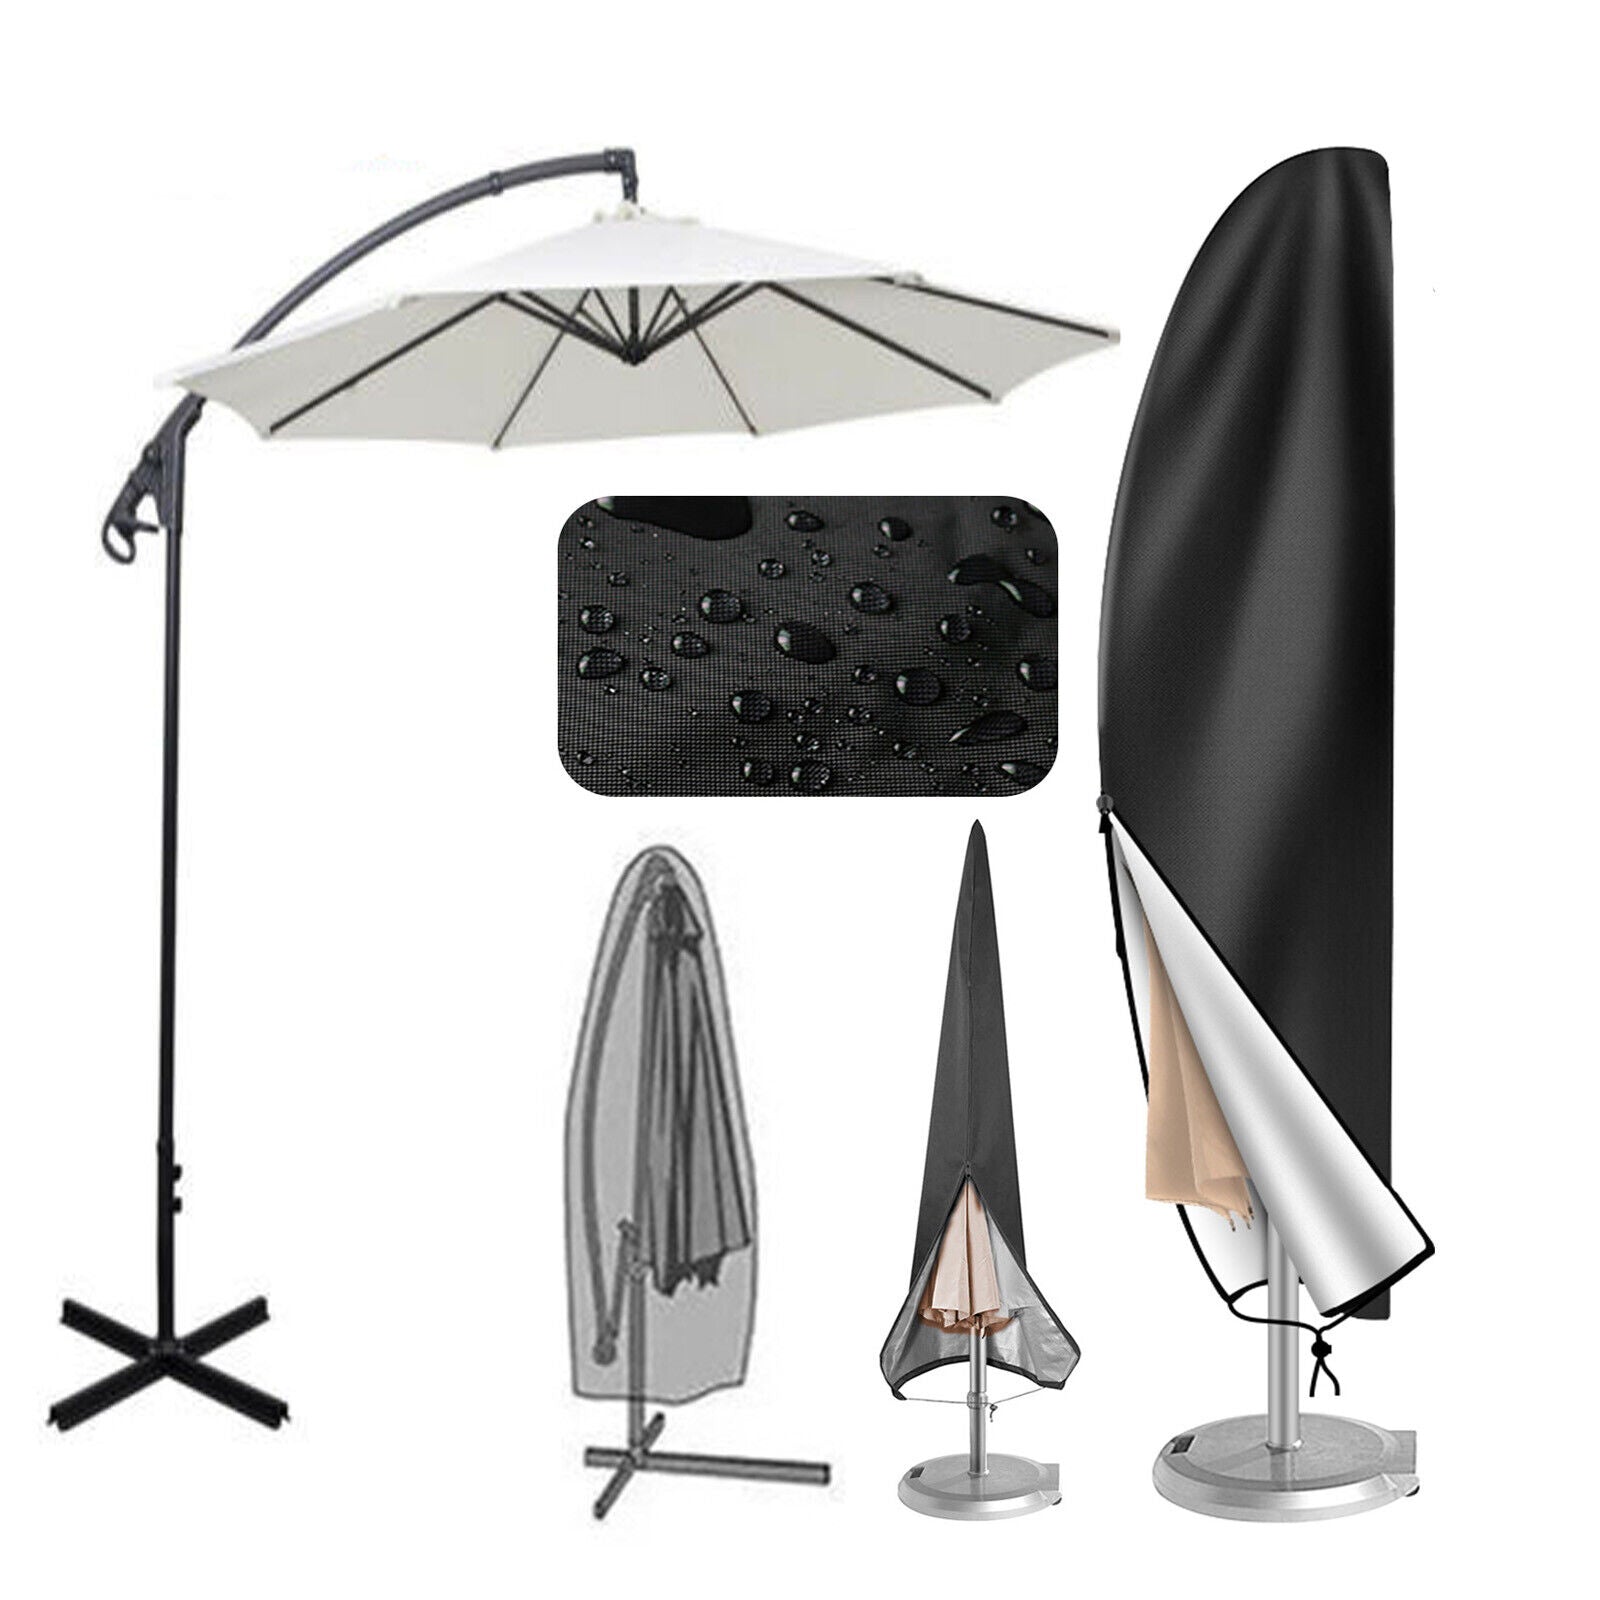 280 cm Outdoor Cantilever Umbrella Cover Garden Patio Parasol Sun/Rain/Dust Protection